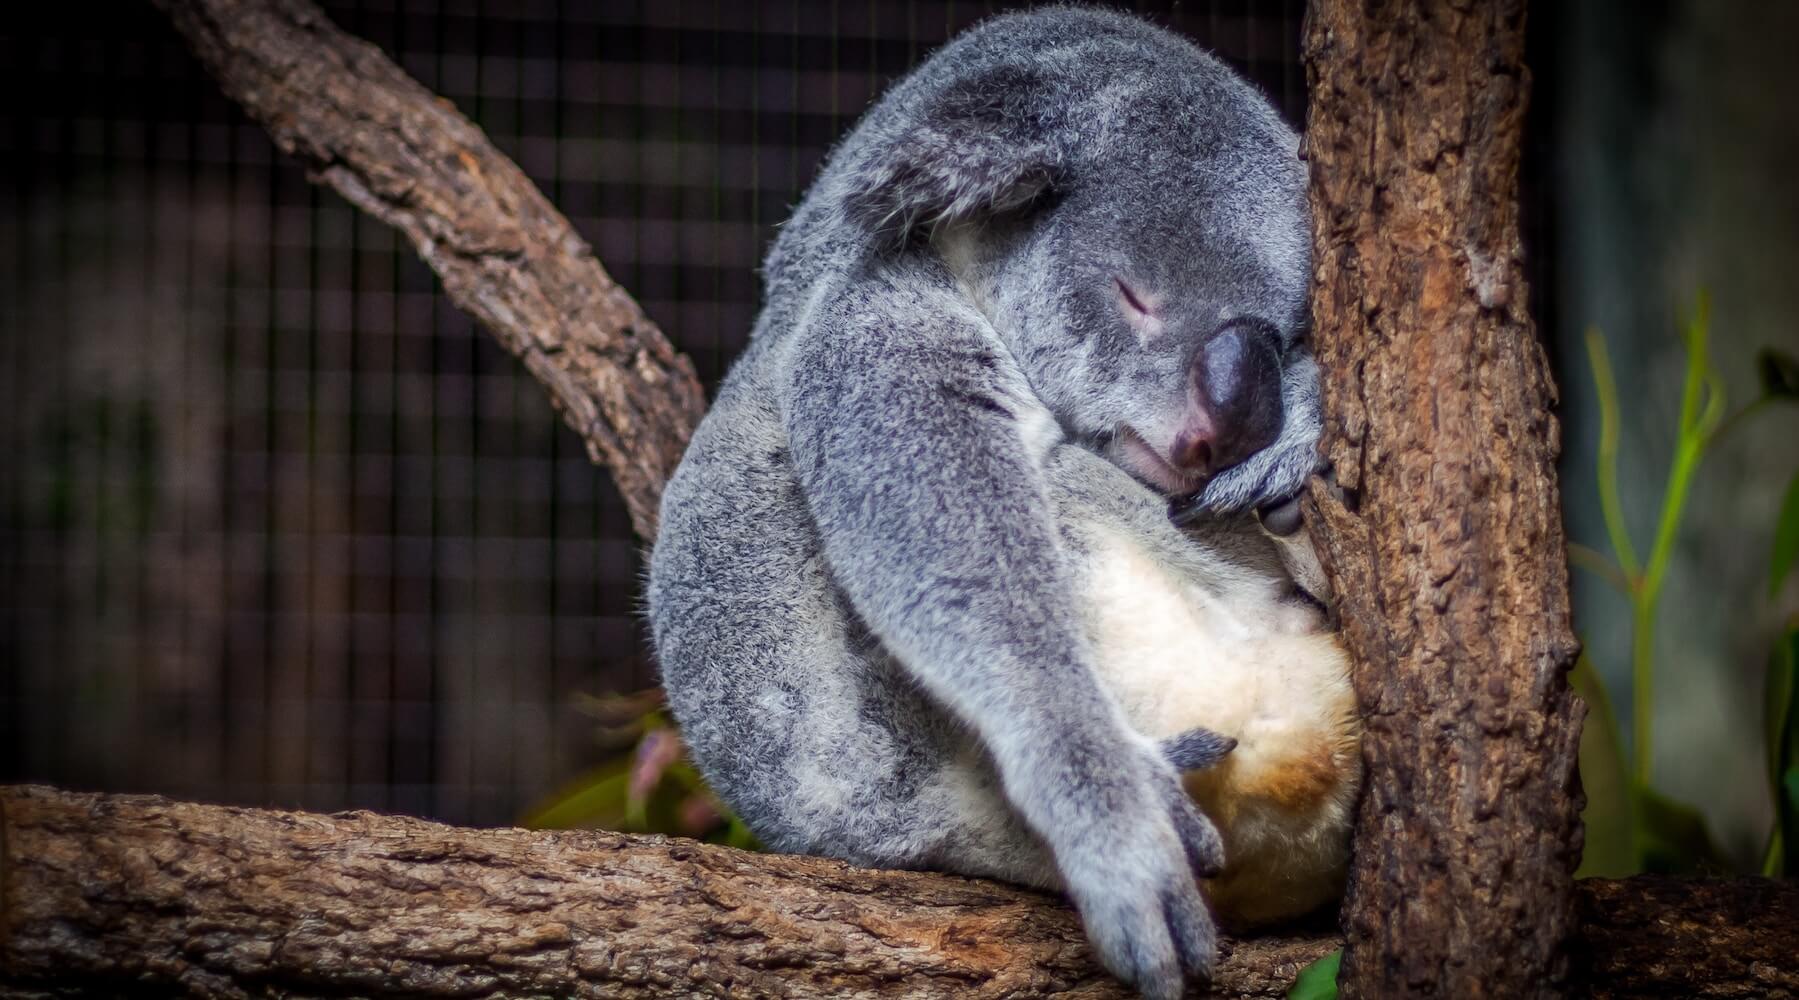 A koala sleeps in a tree